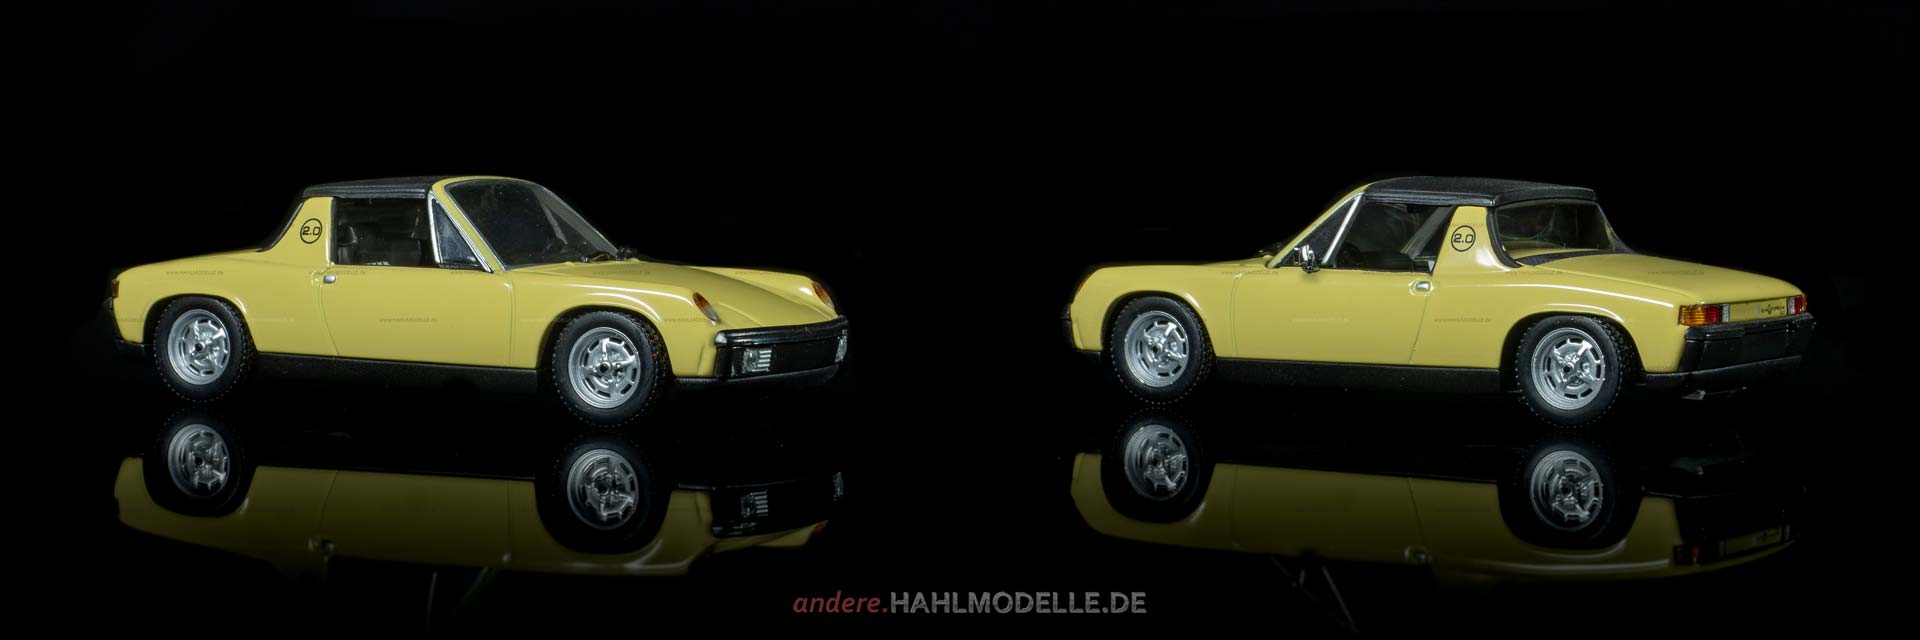 Porsche 914/6 | Coupé | Minichamps | www.andere.hahlmodelle.de